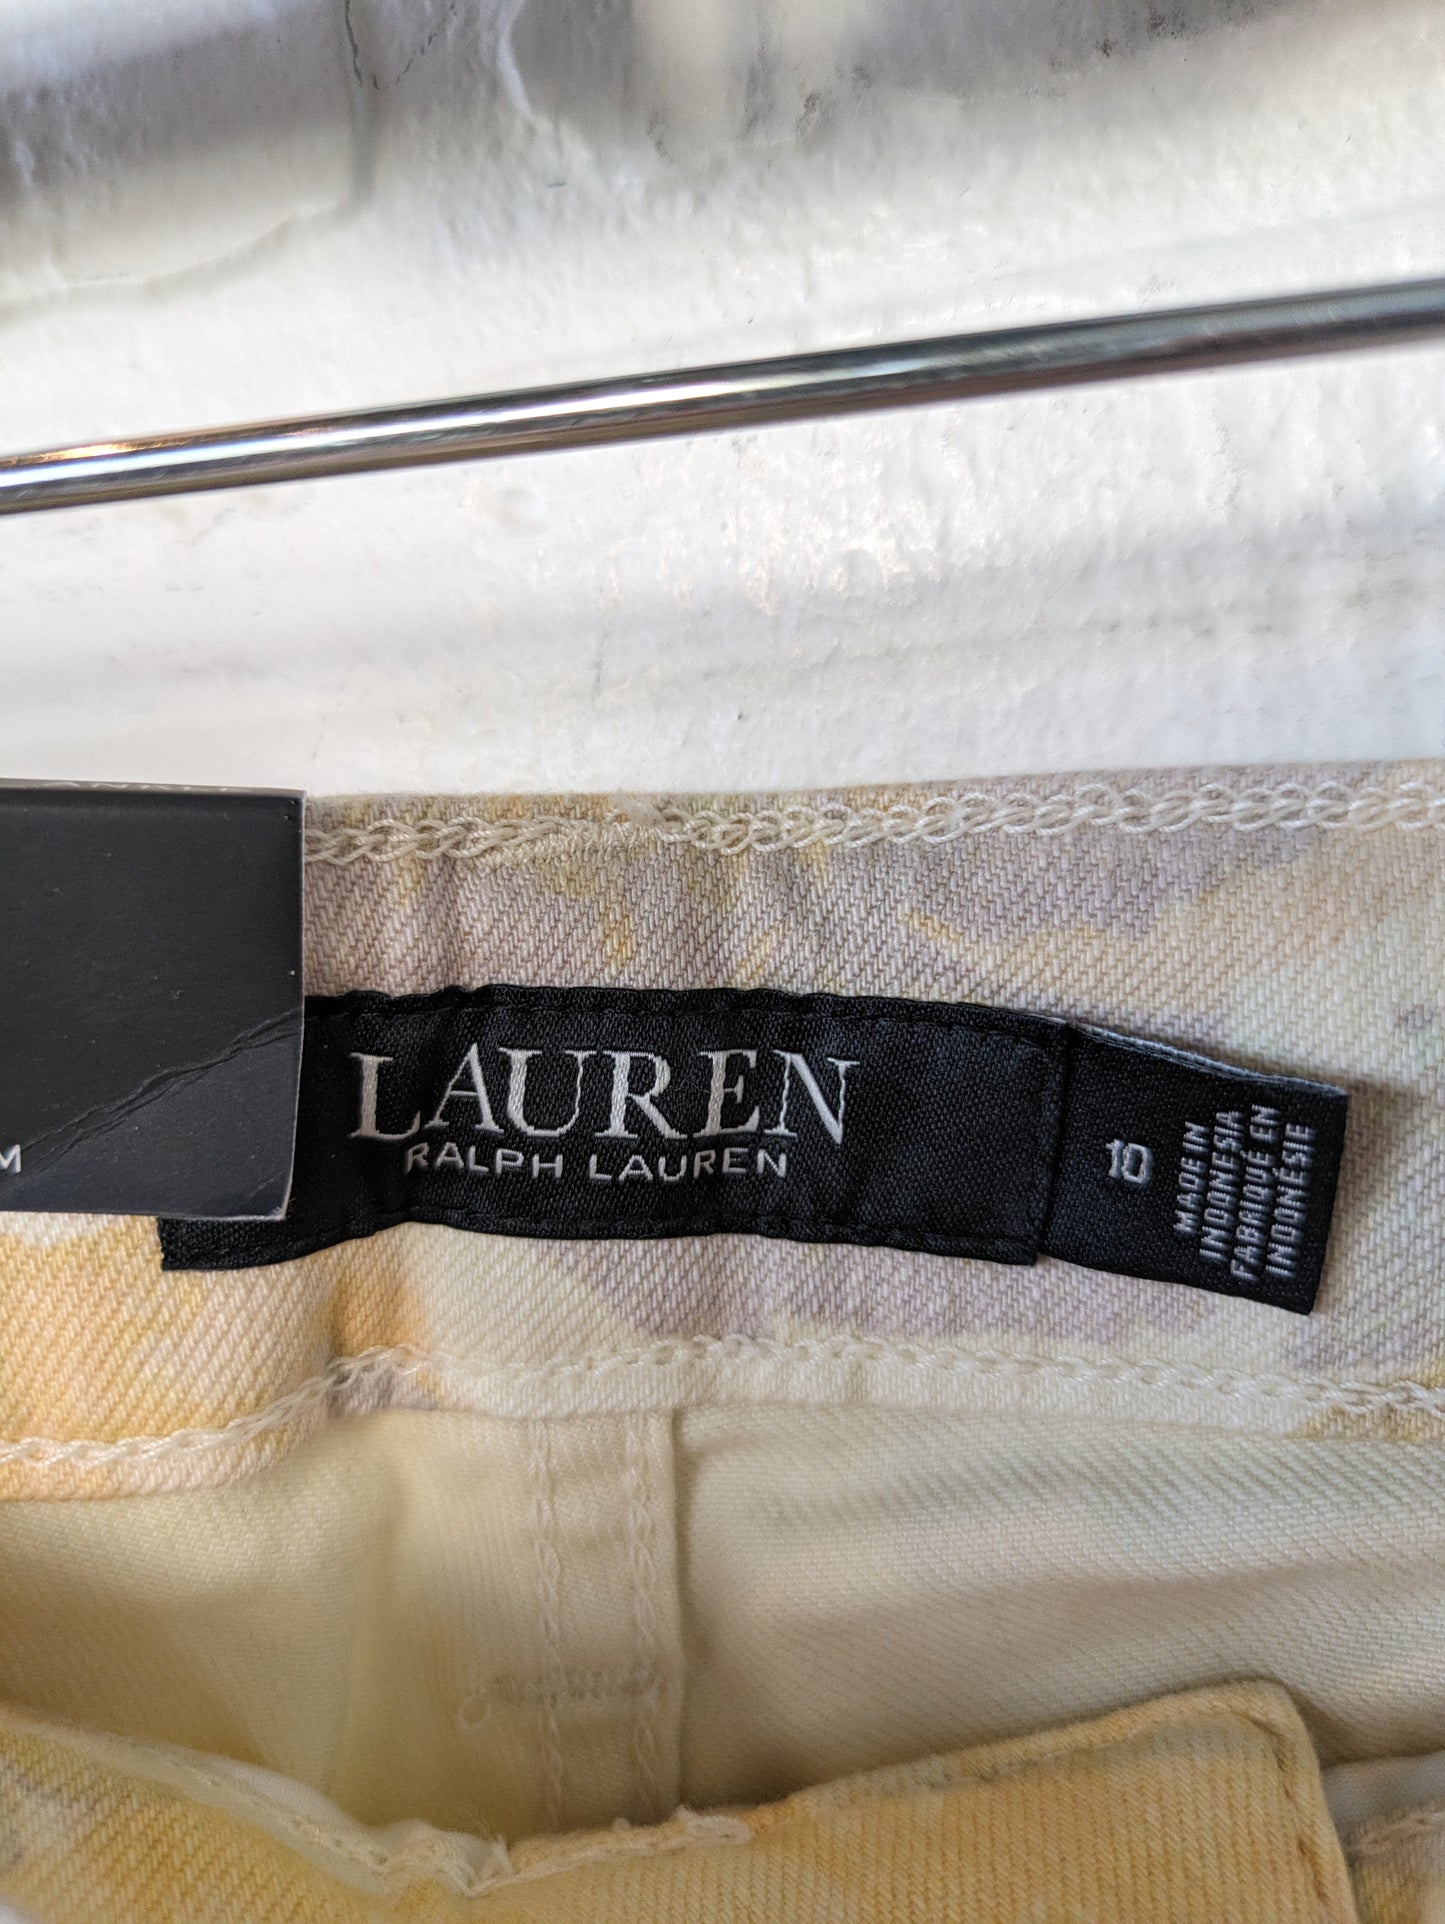 Jeans Skinny By Lauren By Ralph Lauren  Size: 10